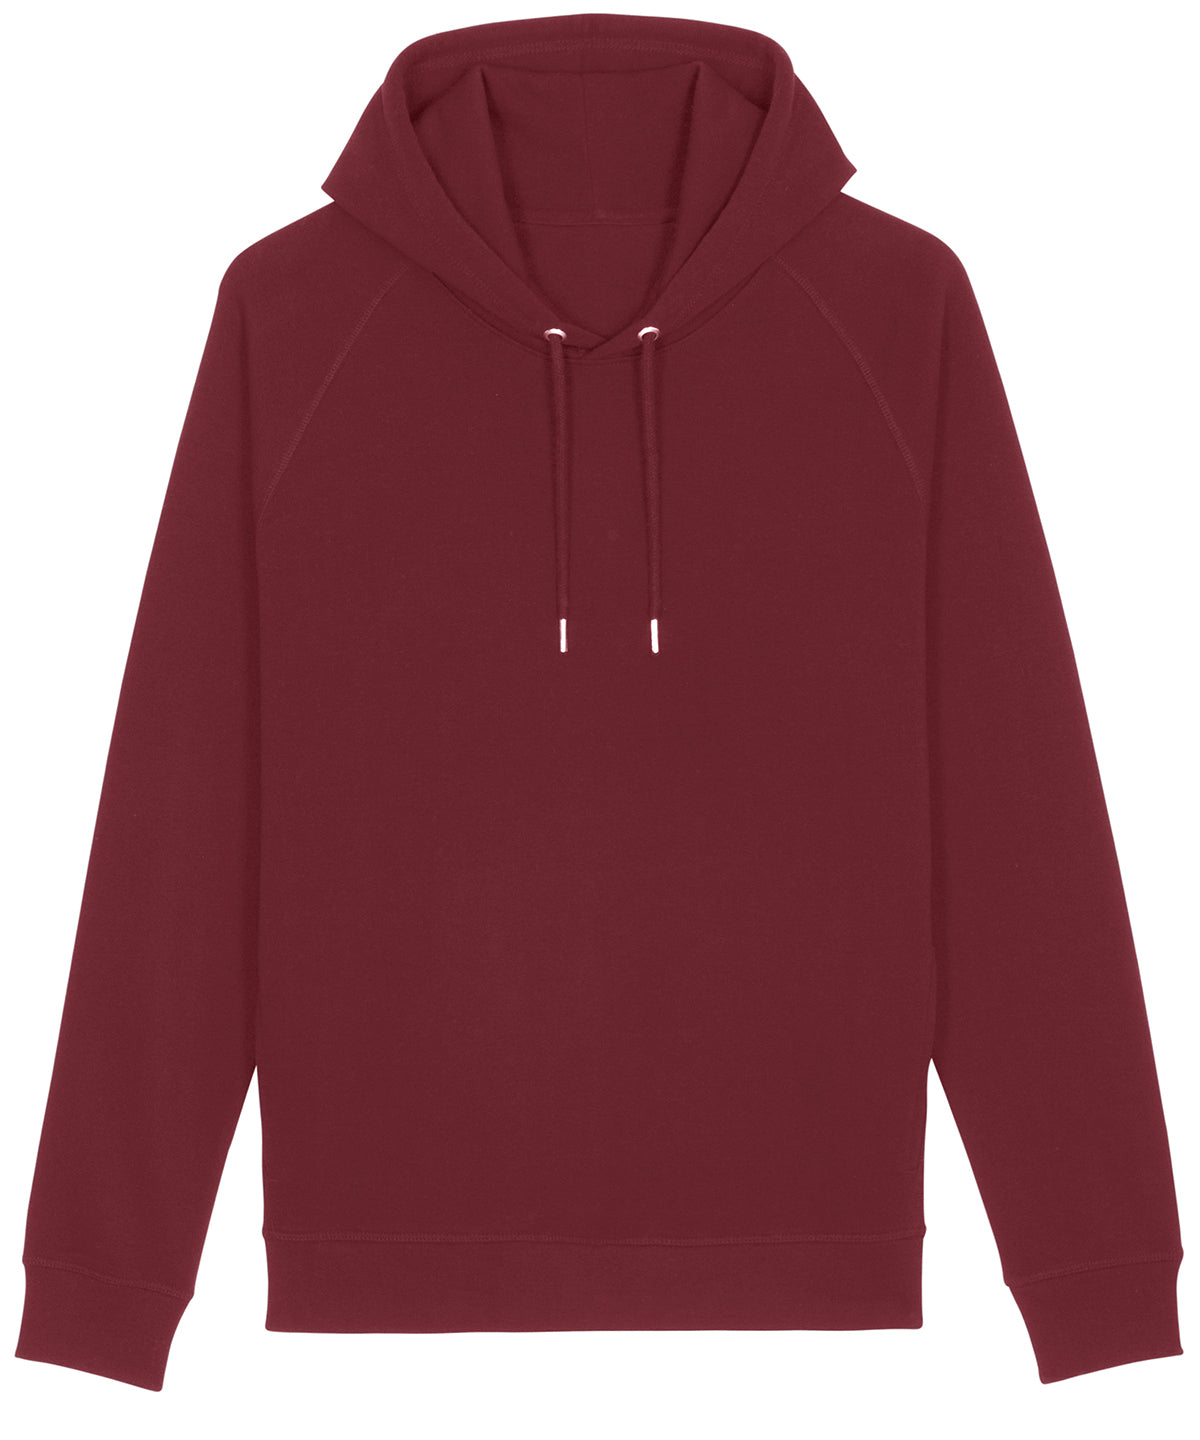 Personalised Hoodies - Dark Grey Stanley/Stella Sider unisex side pocket hoodie  (STSU824)